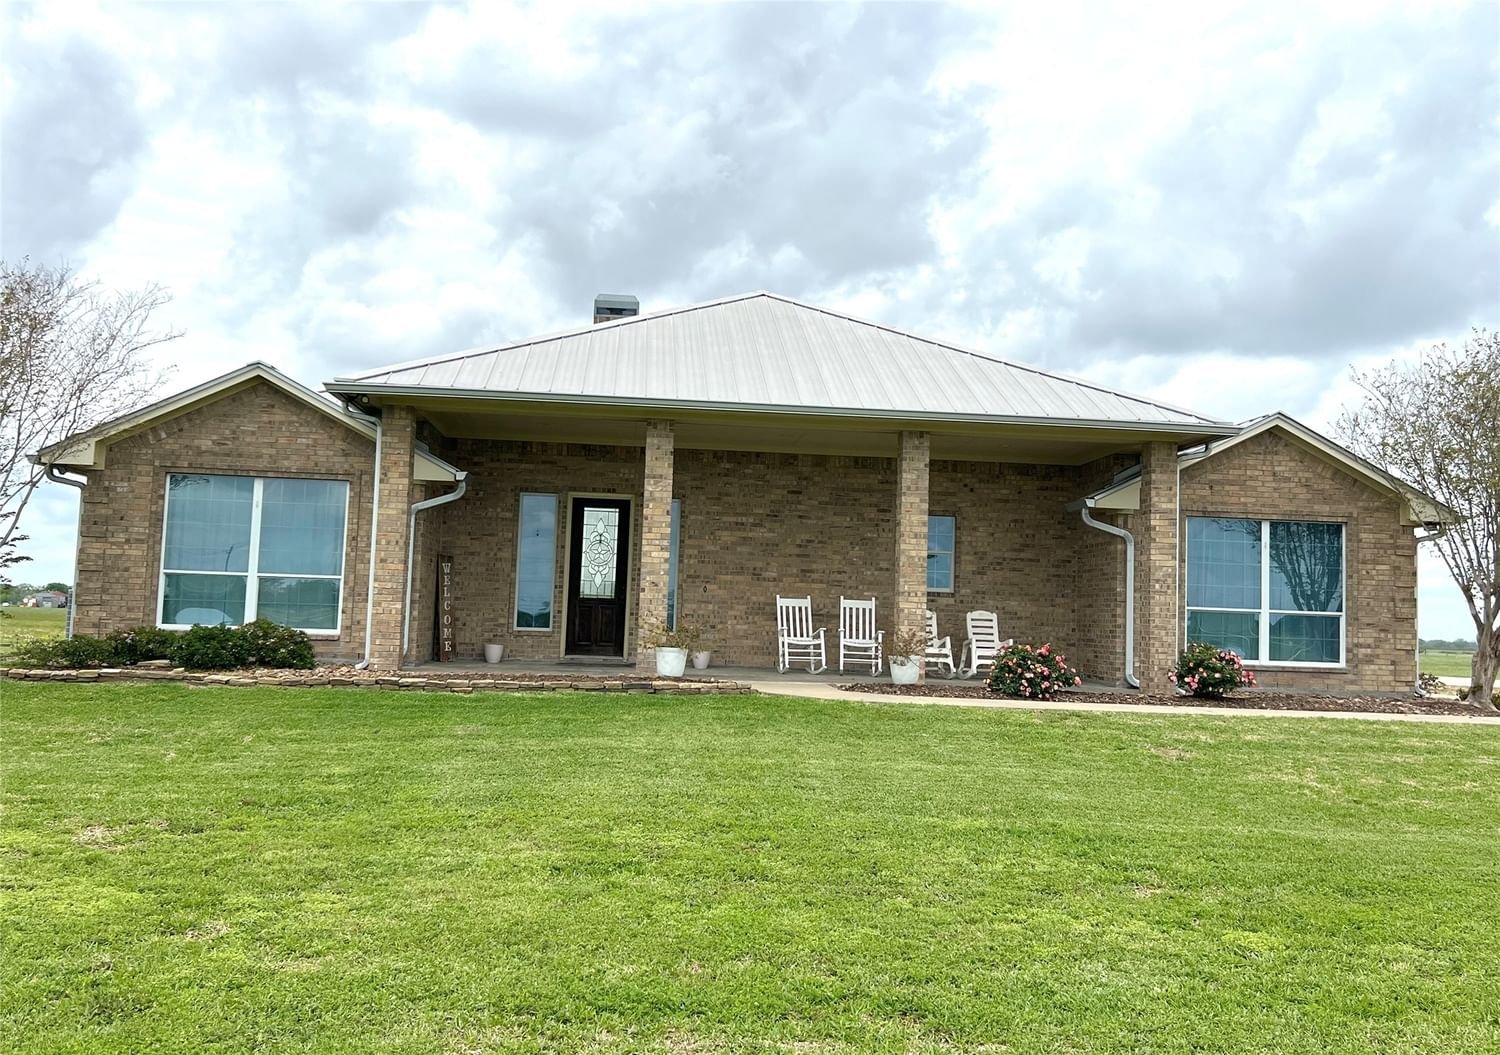 Real estate property located at 2879 County Road 370, Wharton, T P Anderson Surv Abs #67, El Campo, TX, US